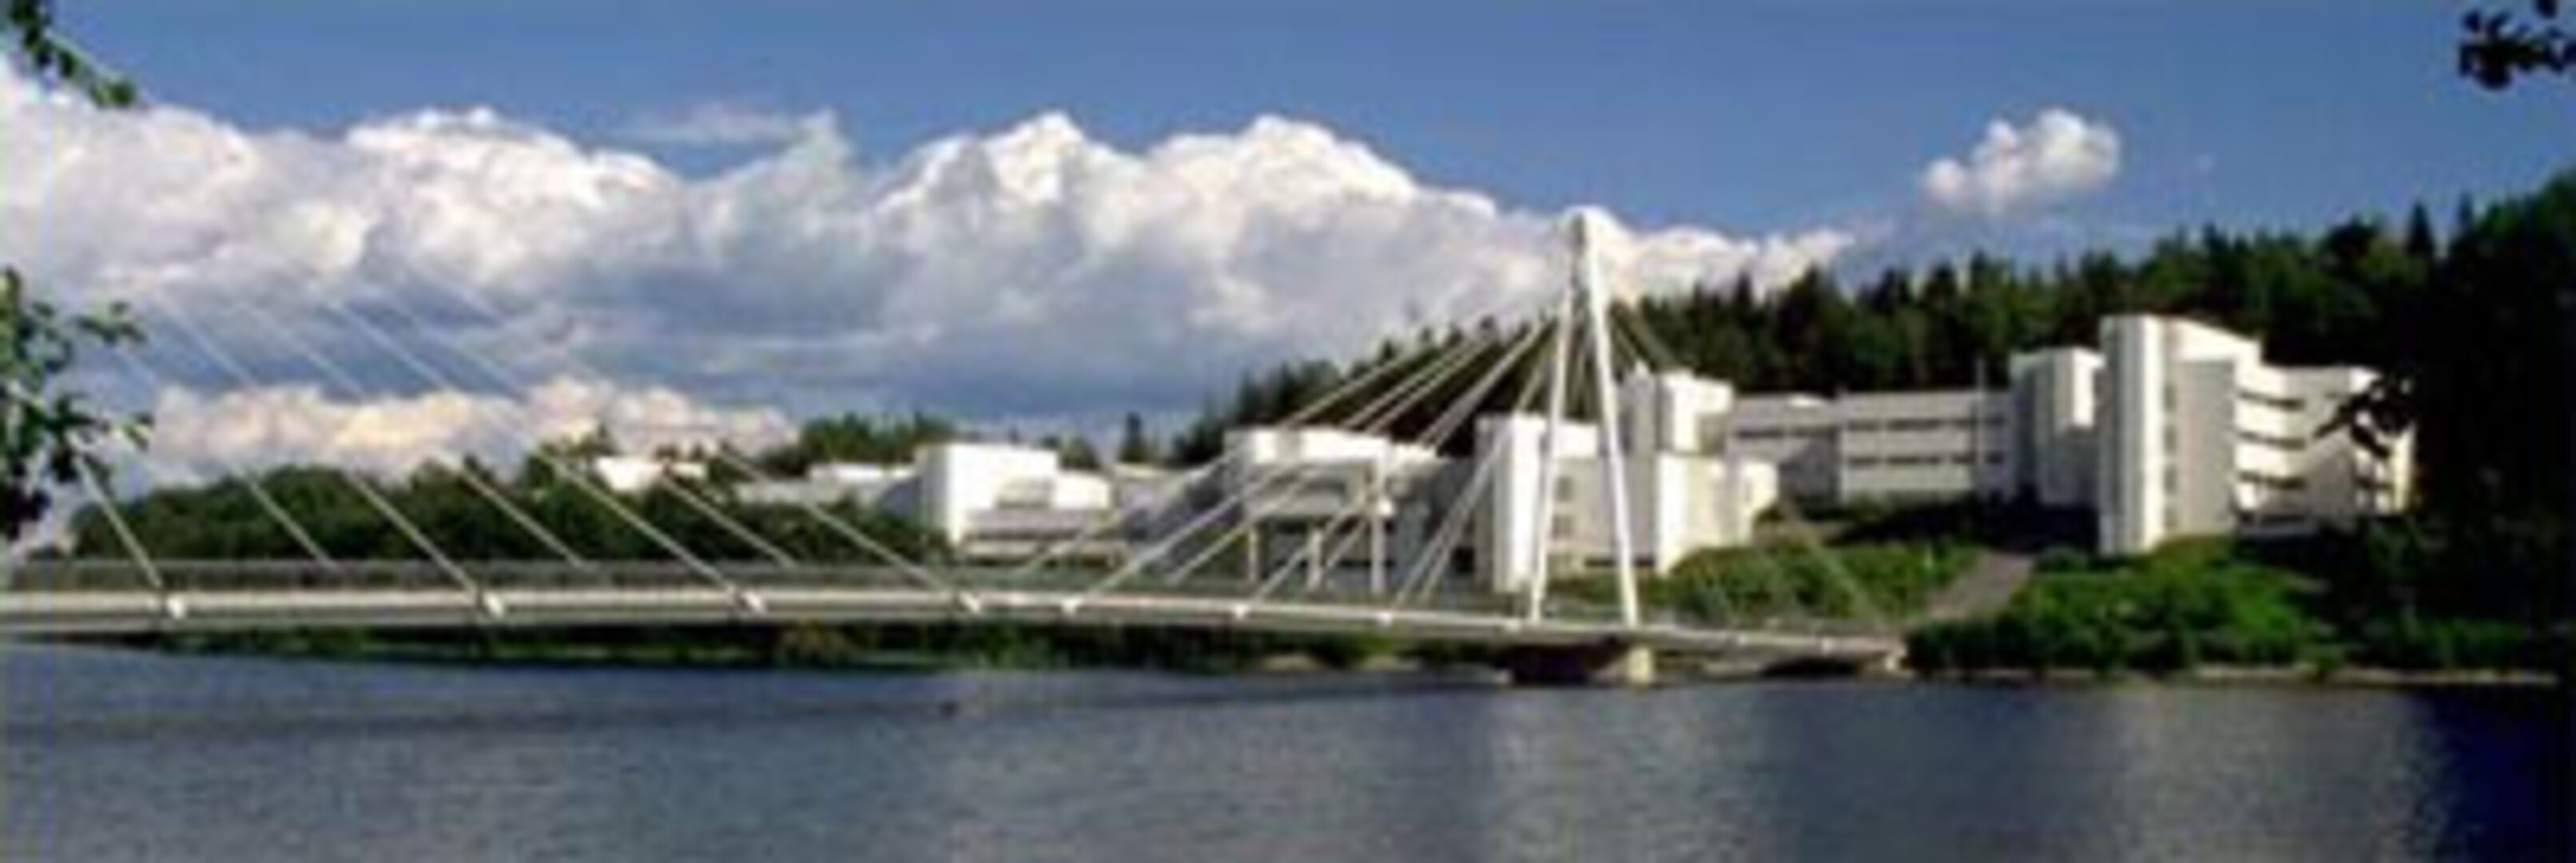 Jyväskylän yliopiston fysiikan laitos sijaitsee luonnonkauniilla paikalla